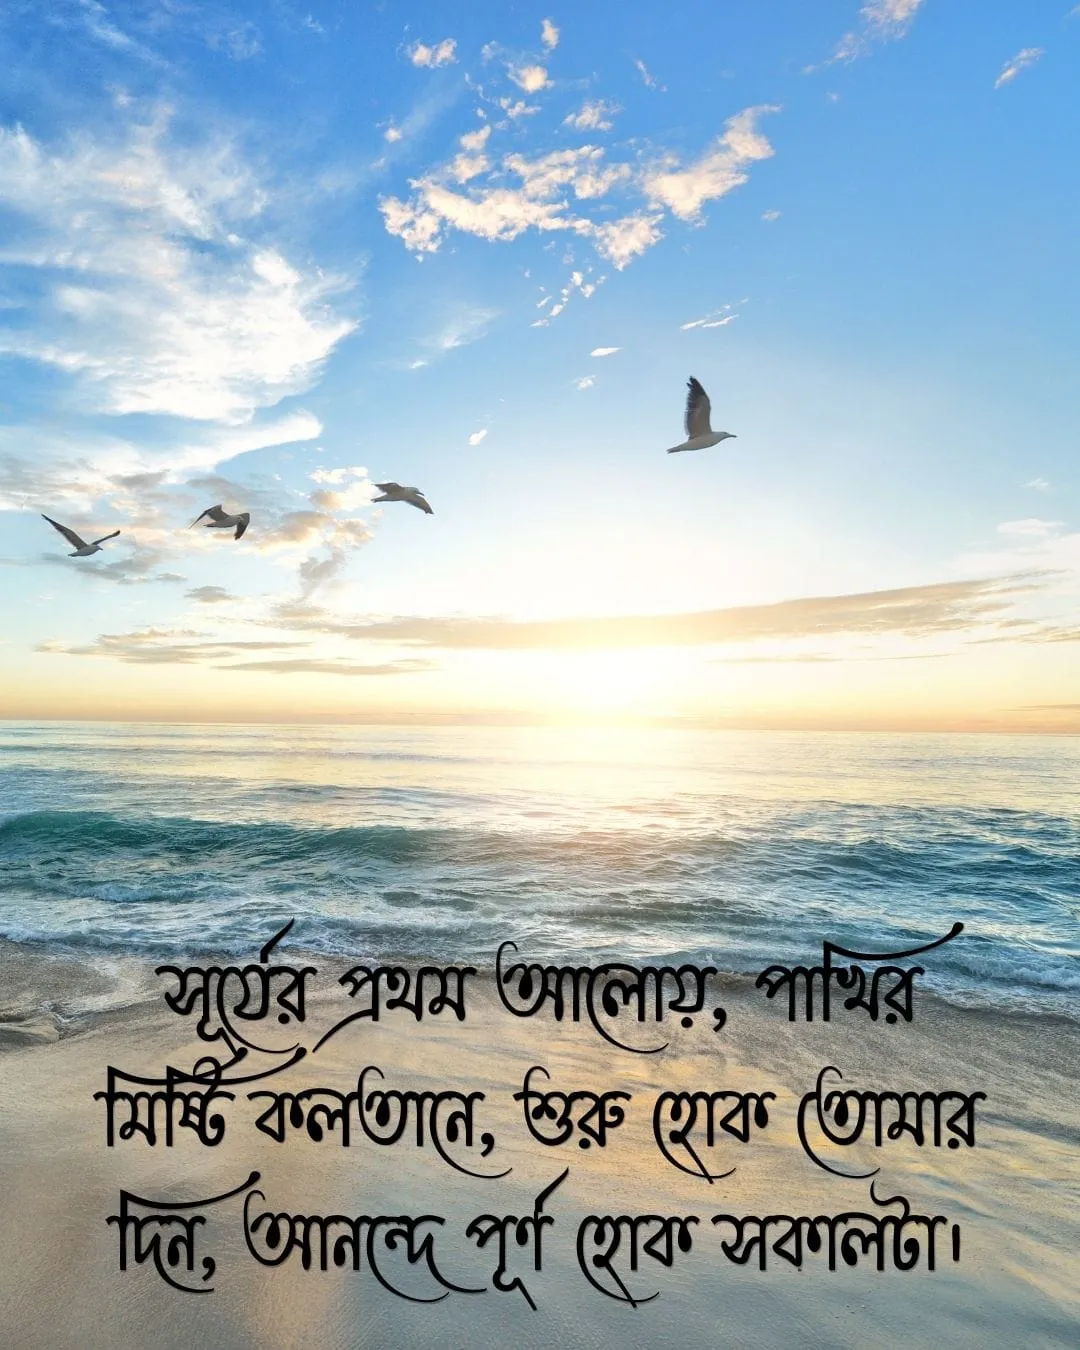 গুড মর্নিং মেসেজ ও ছবি good moring wish image in bengali 1